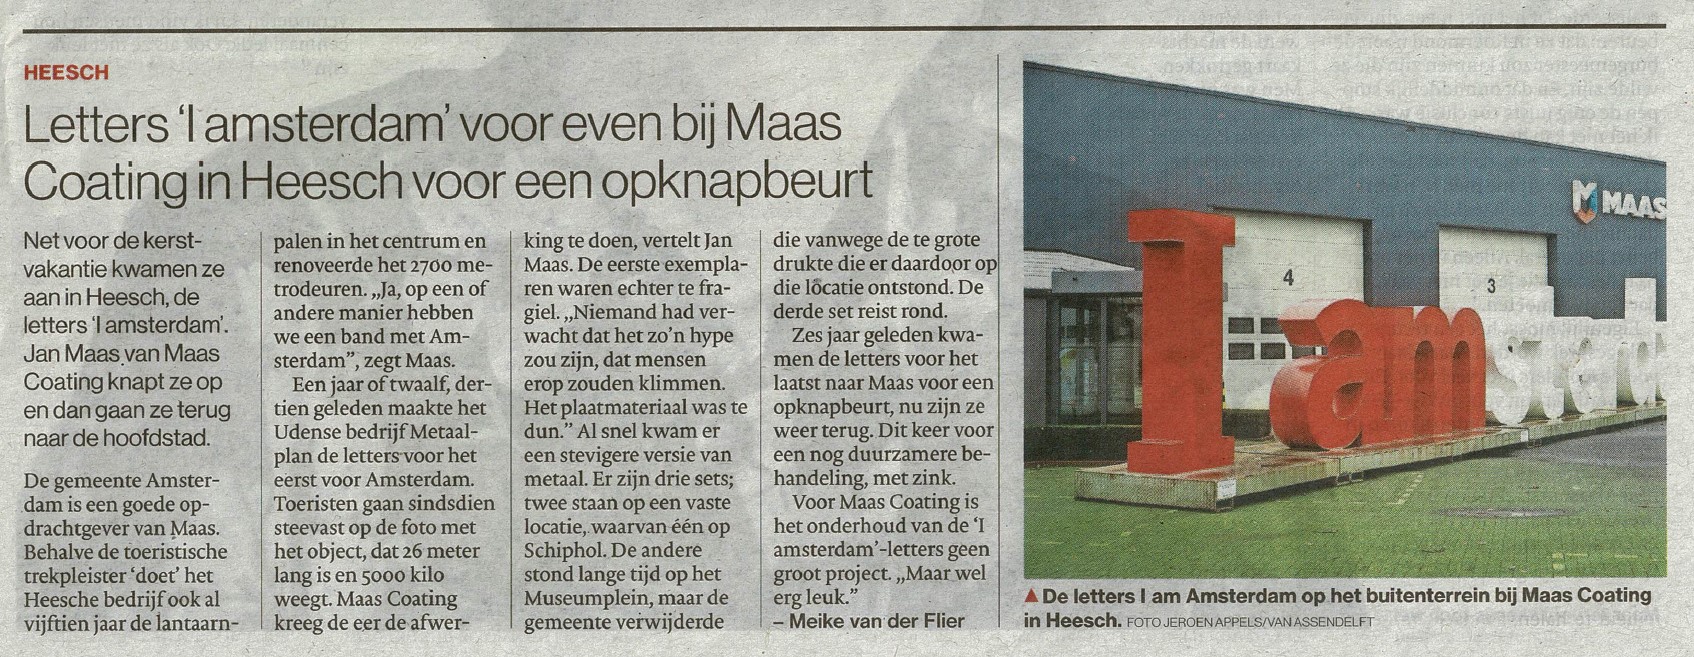 Letters 'I amsterdam' voor even bij Maas Coating in Heesch voor een opknapbeurt (1)